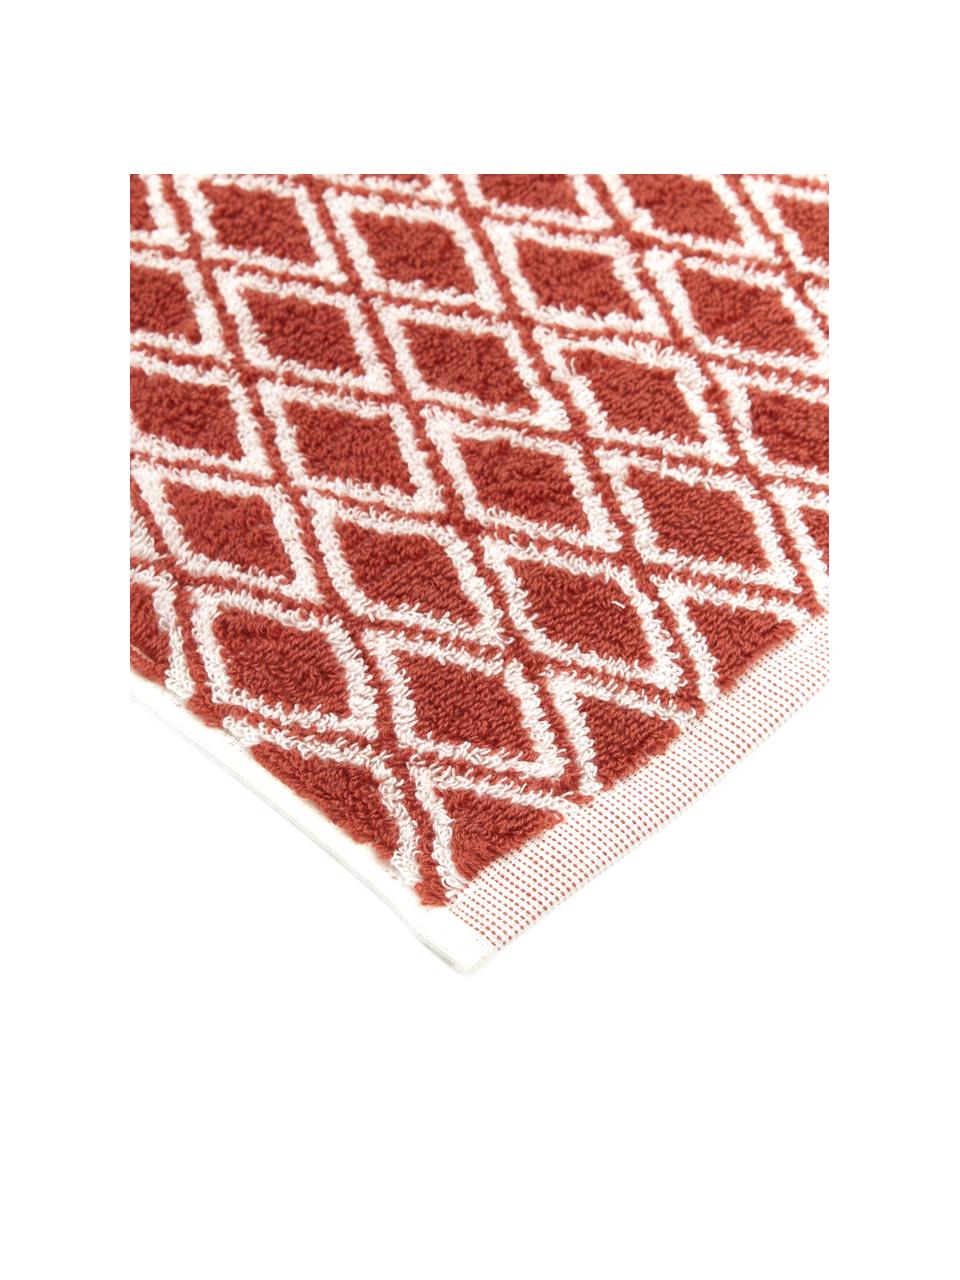 Wende-Handtuch Ava mit grafischem Muster, 100% Baumwolle, mittelschwere Qualität 550 g/m², Terrakotta, Cremeweiß, Gästehandtuch